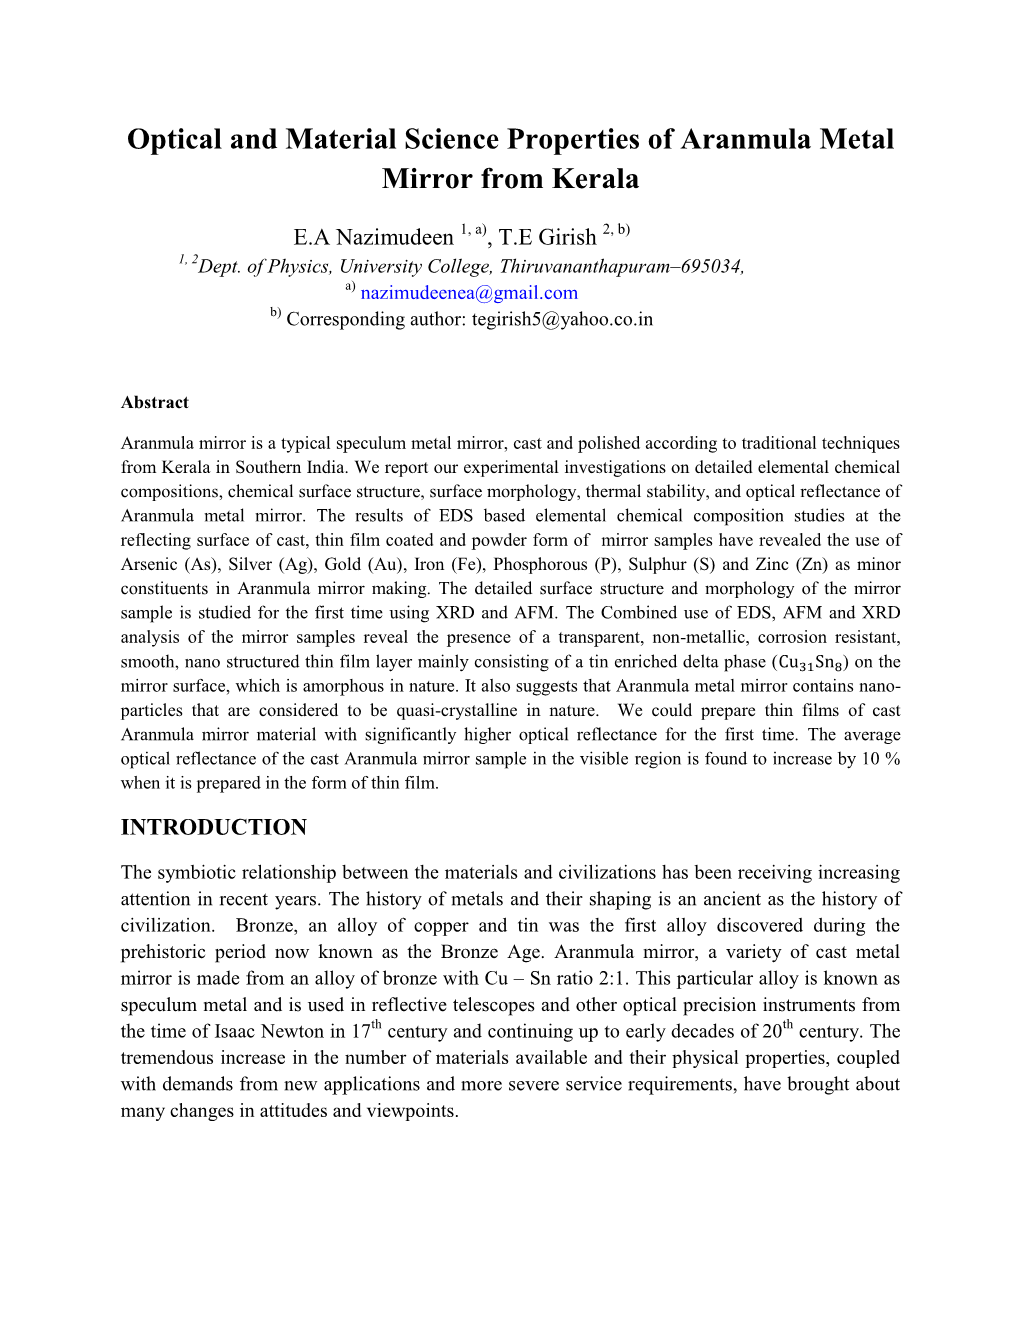 Optical and Material Science Properties of Aranmula Metal Mirror from Kerala